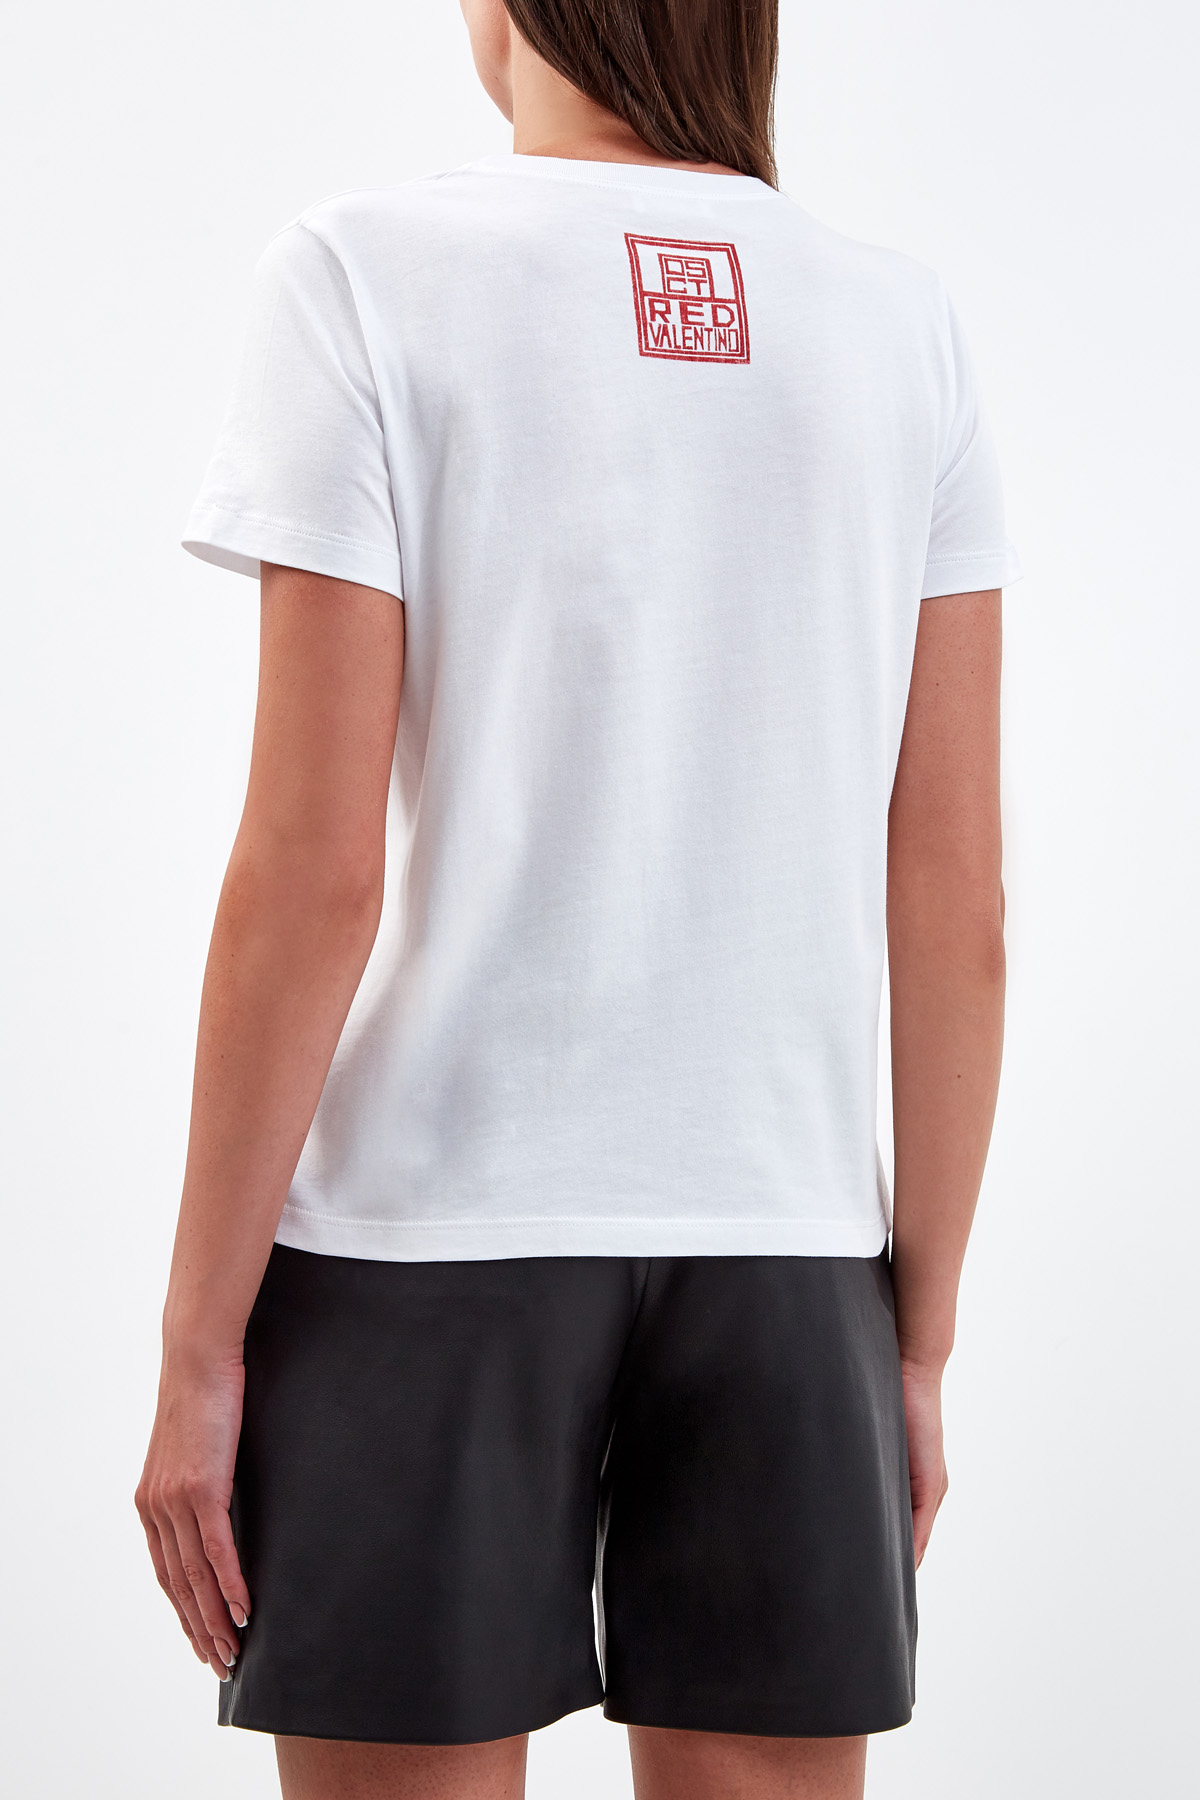 Хлопковая футболка с короткими рукавами и фирменным принтом Butterfly REDVALENTINO, цвет белый, размер XL;M - фото 4